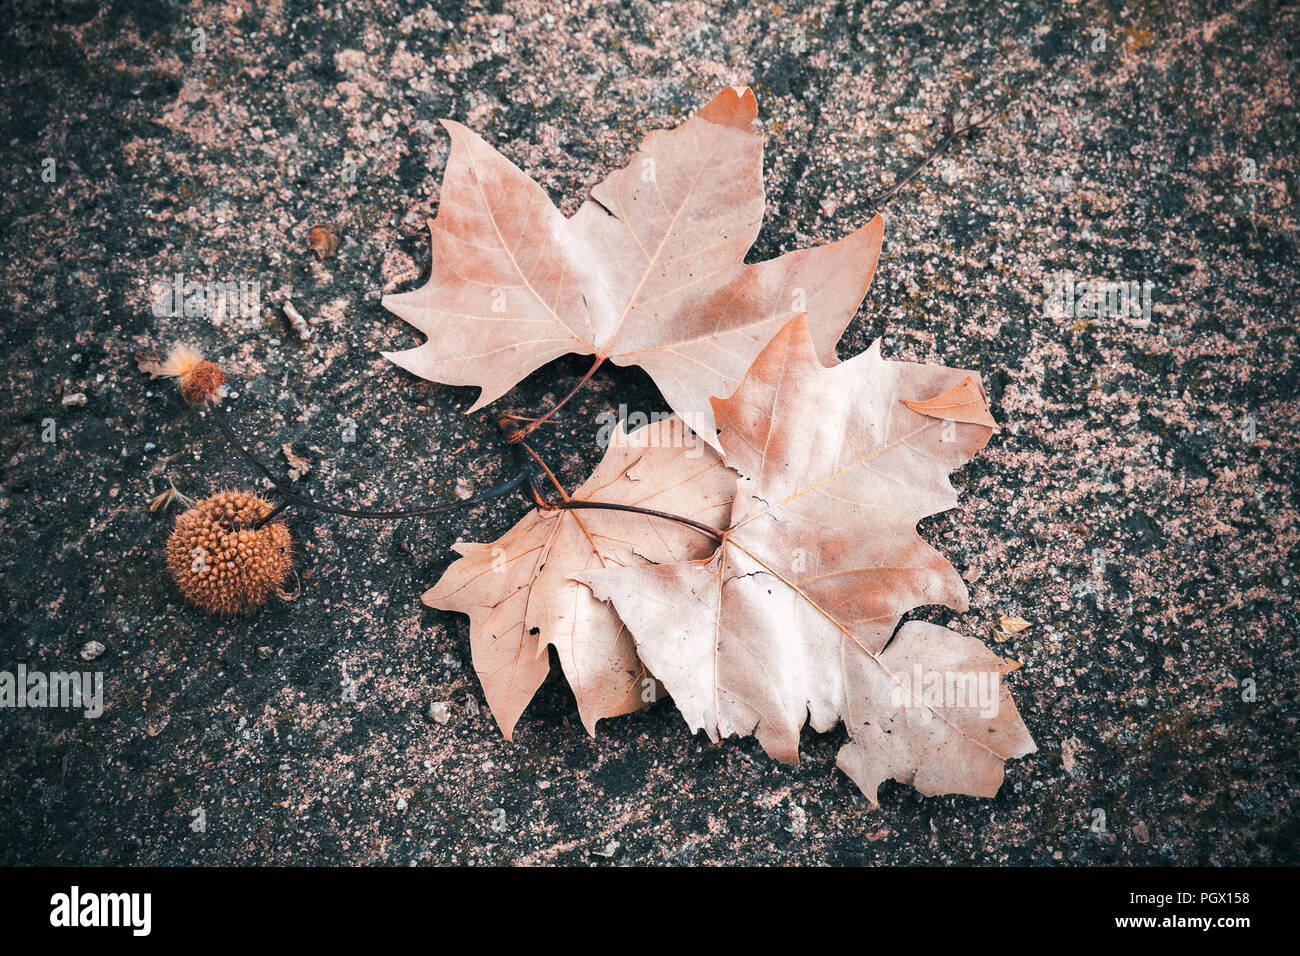 Plan oriental tombée feuilles et fruits jeter sur sol en pierre naturelle, sombre automne fond photo Banque D'Images